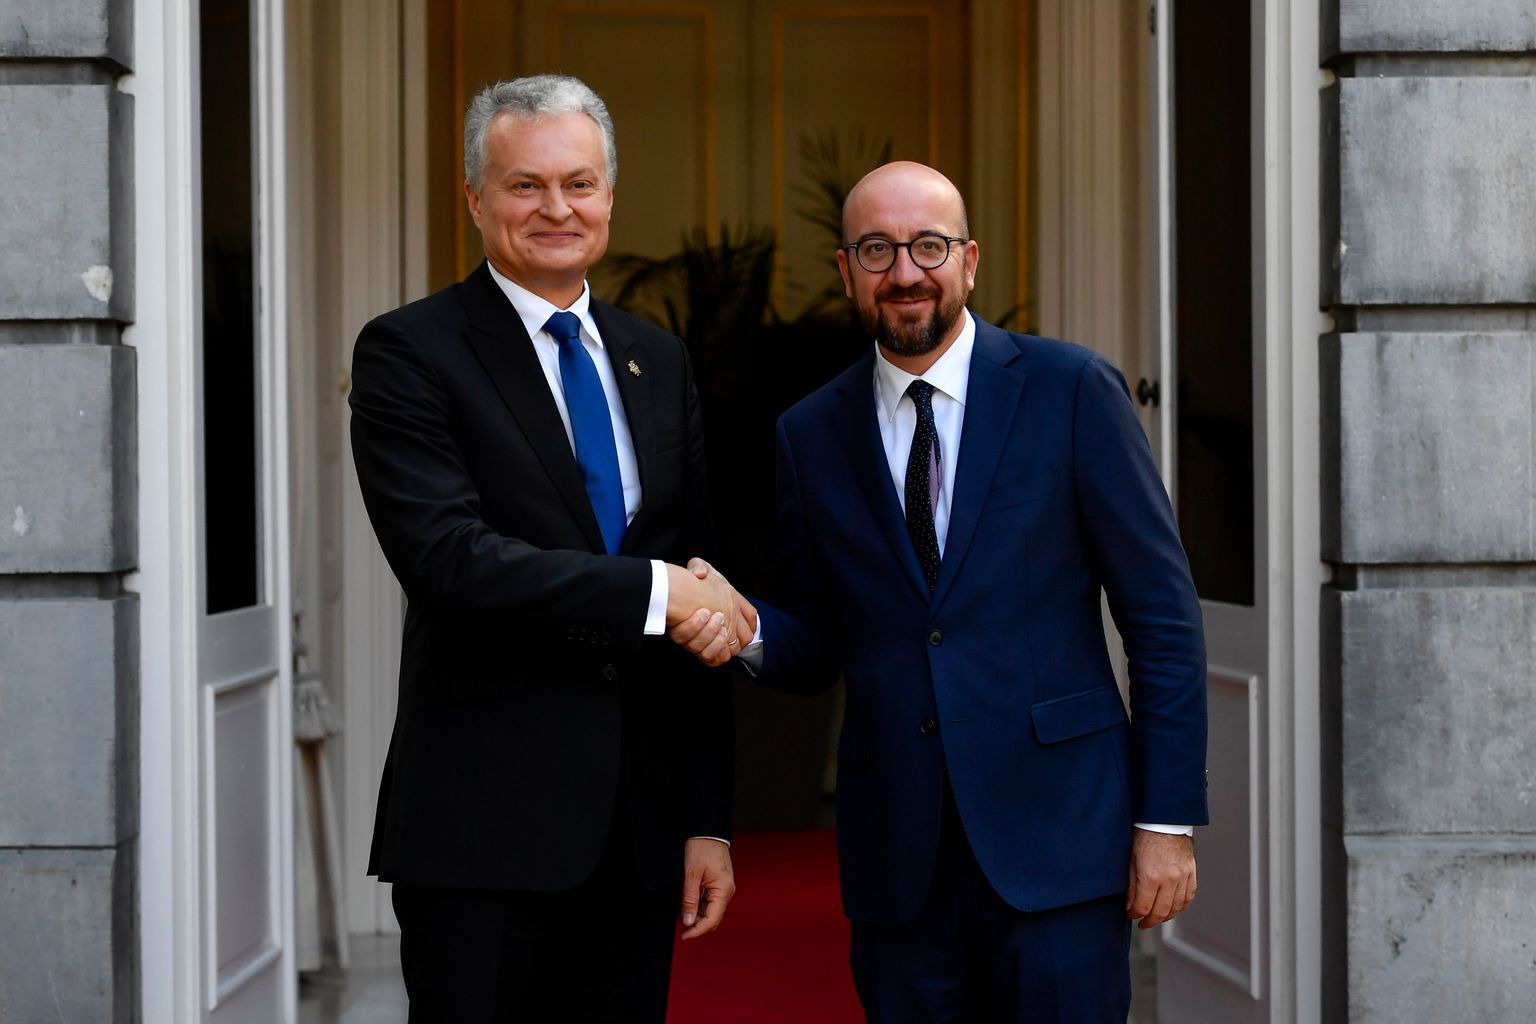 Leedu president Gitanas Nausėda (vasakul) 5. septembril Brüsselis koos Belgia peaministri Charles Micheliga.